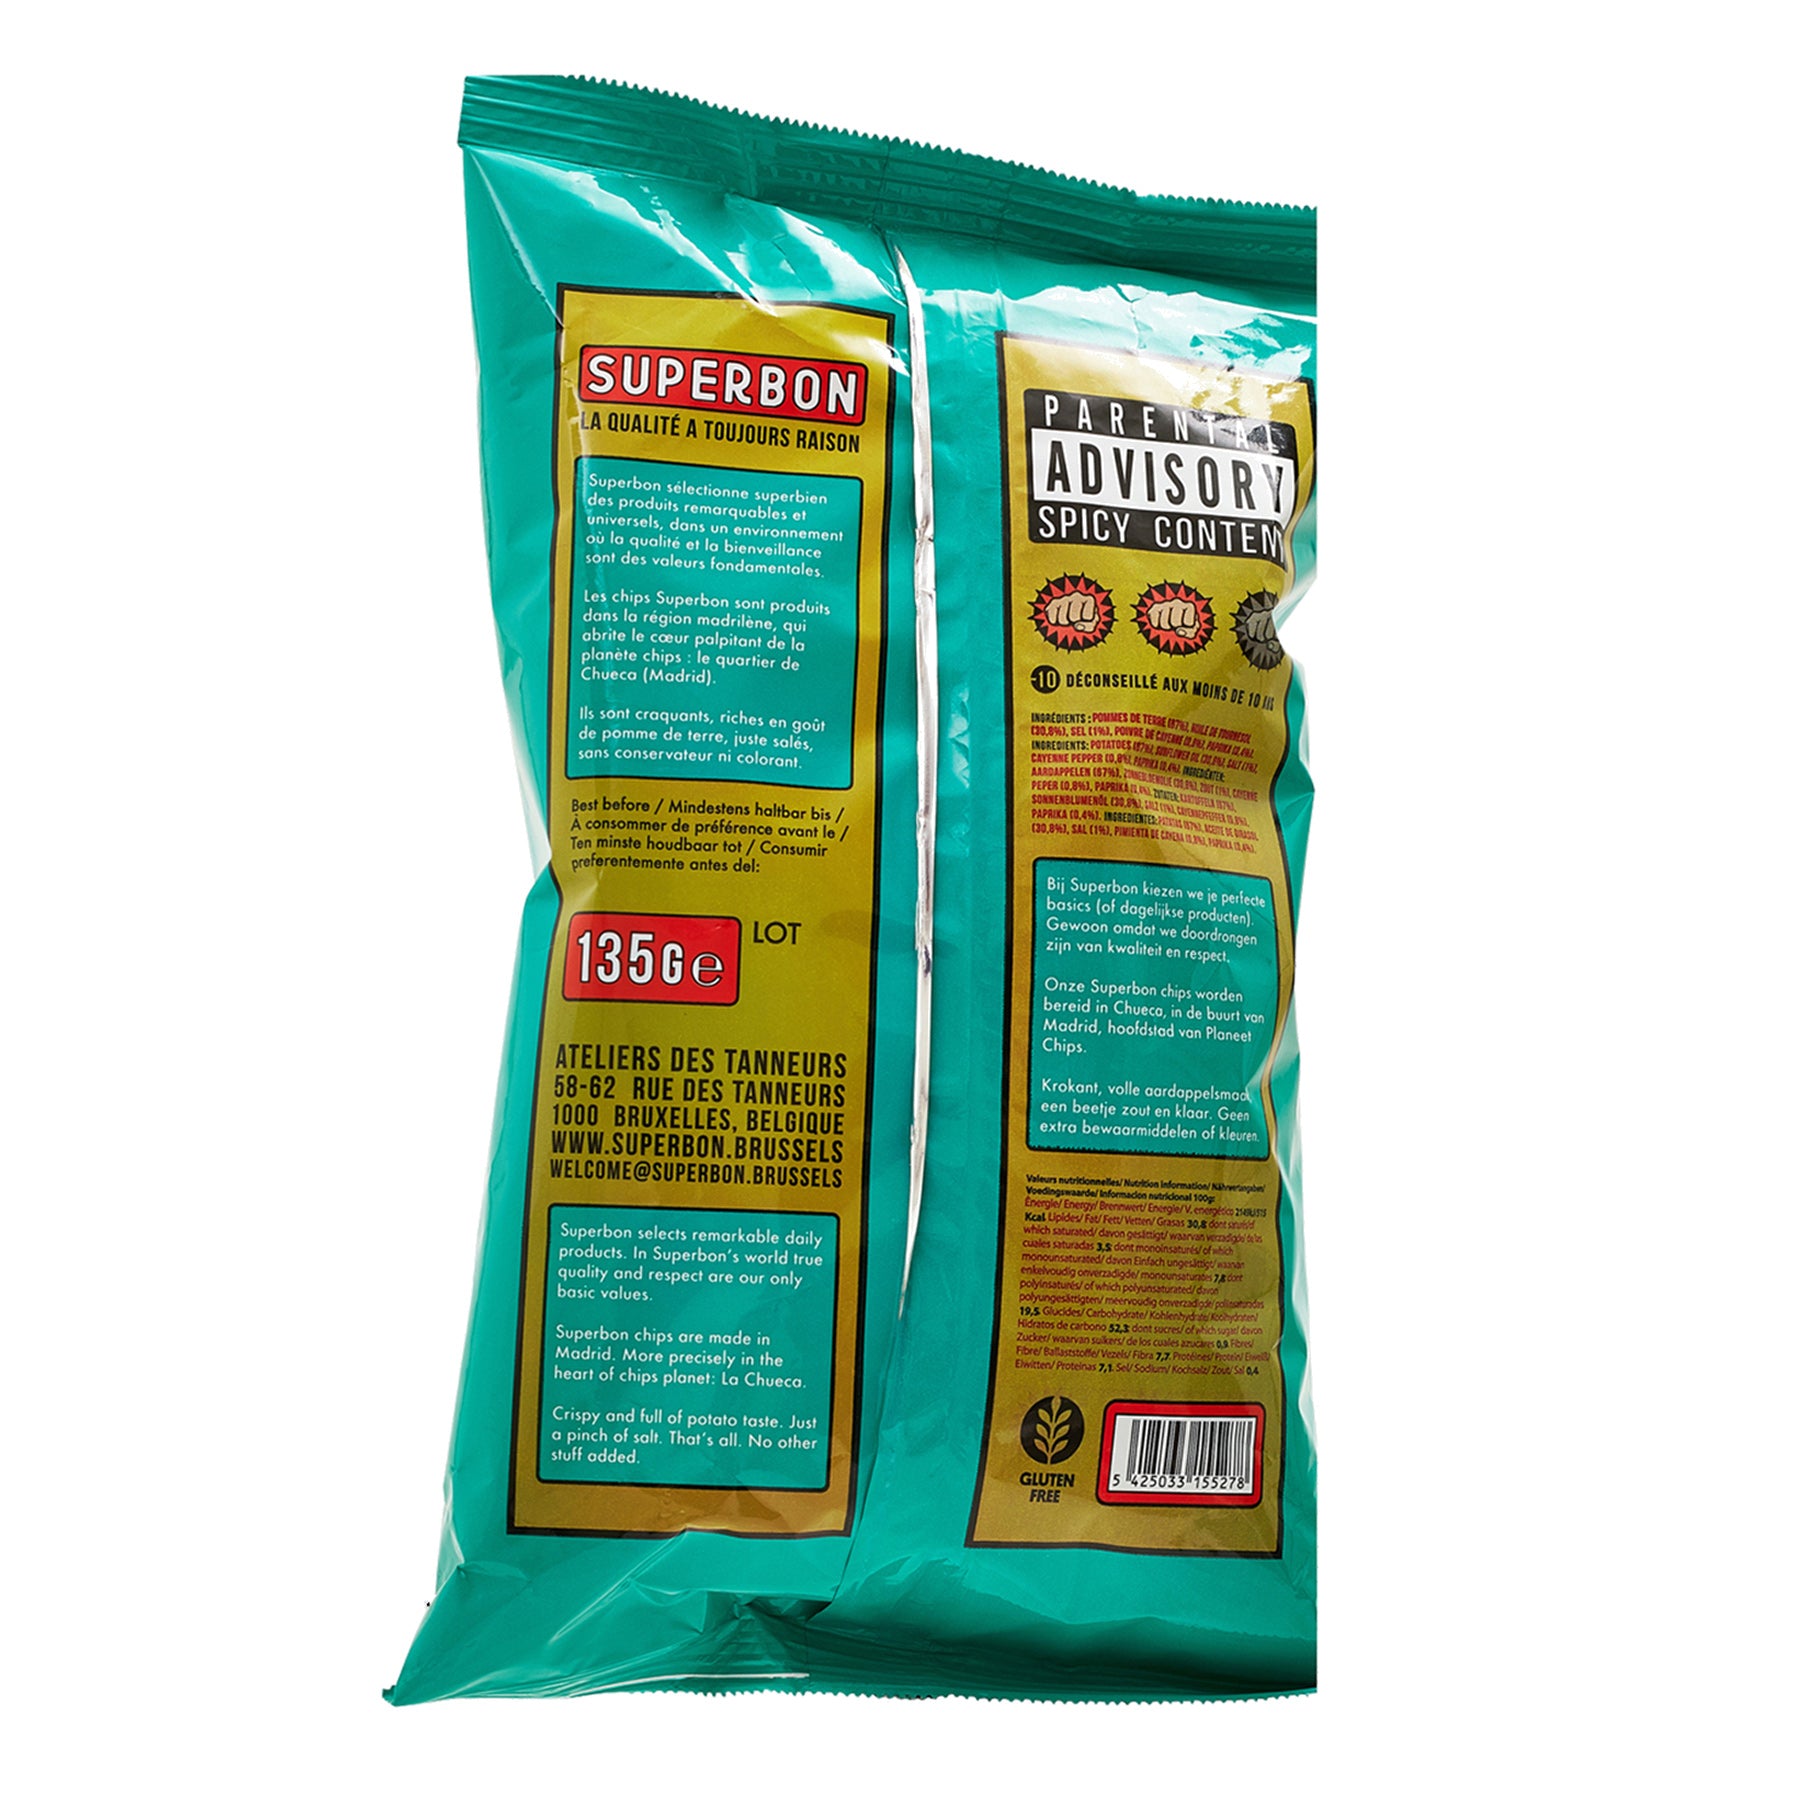 Superbon Piments Chips